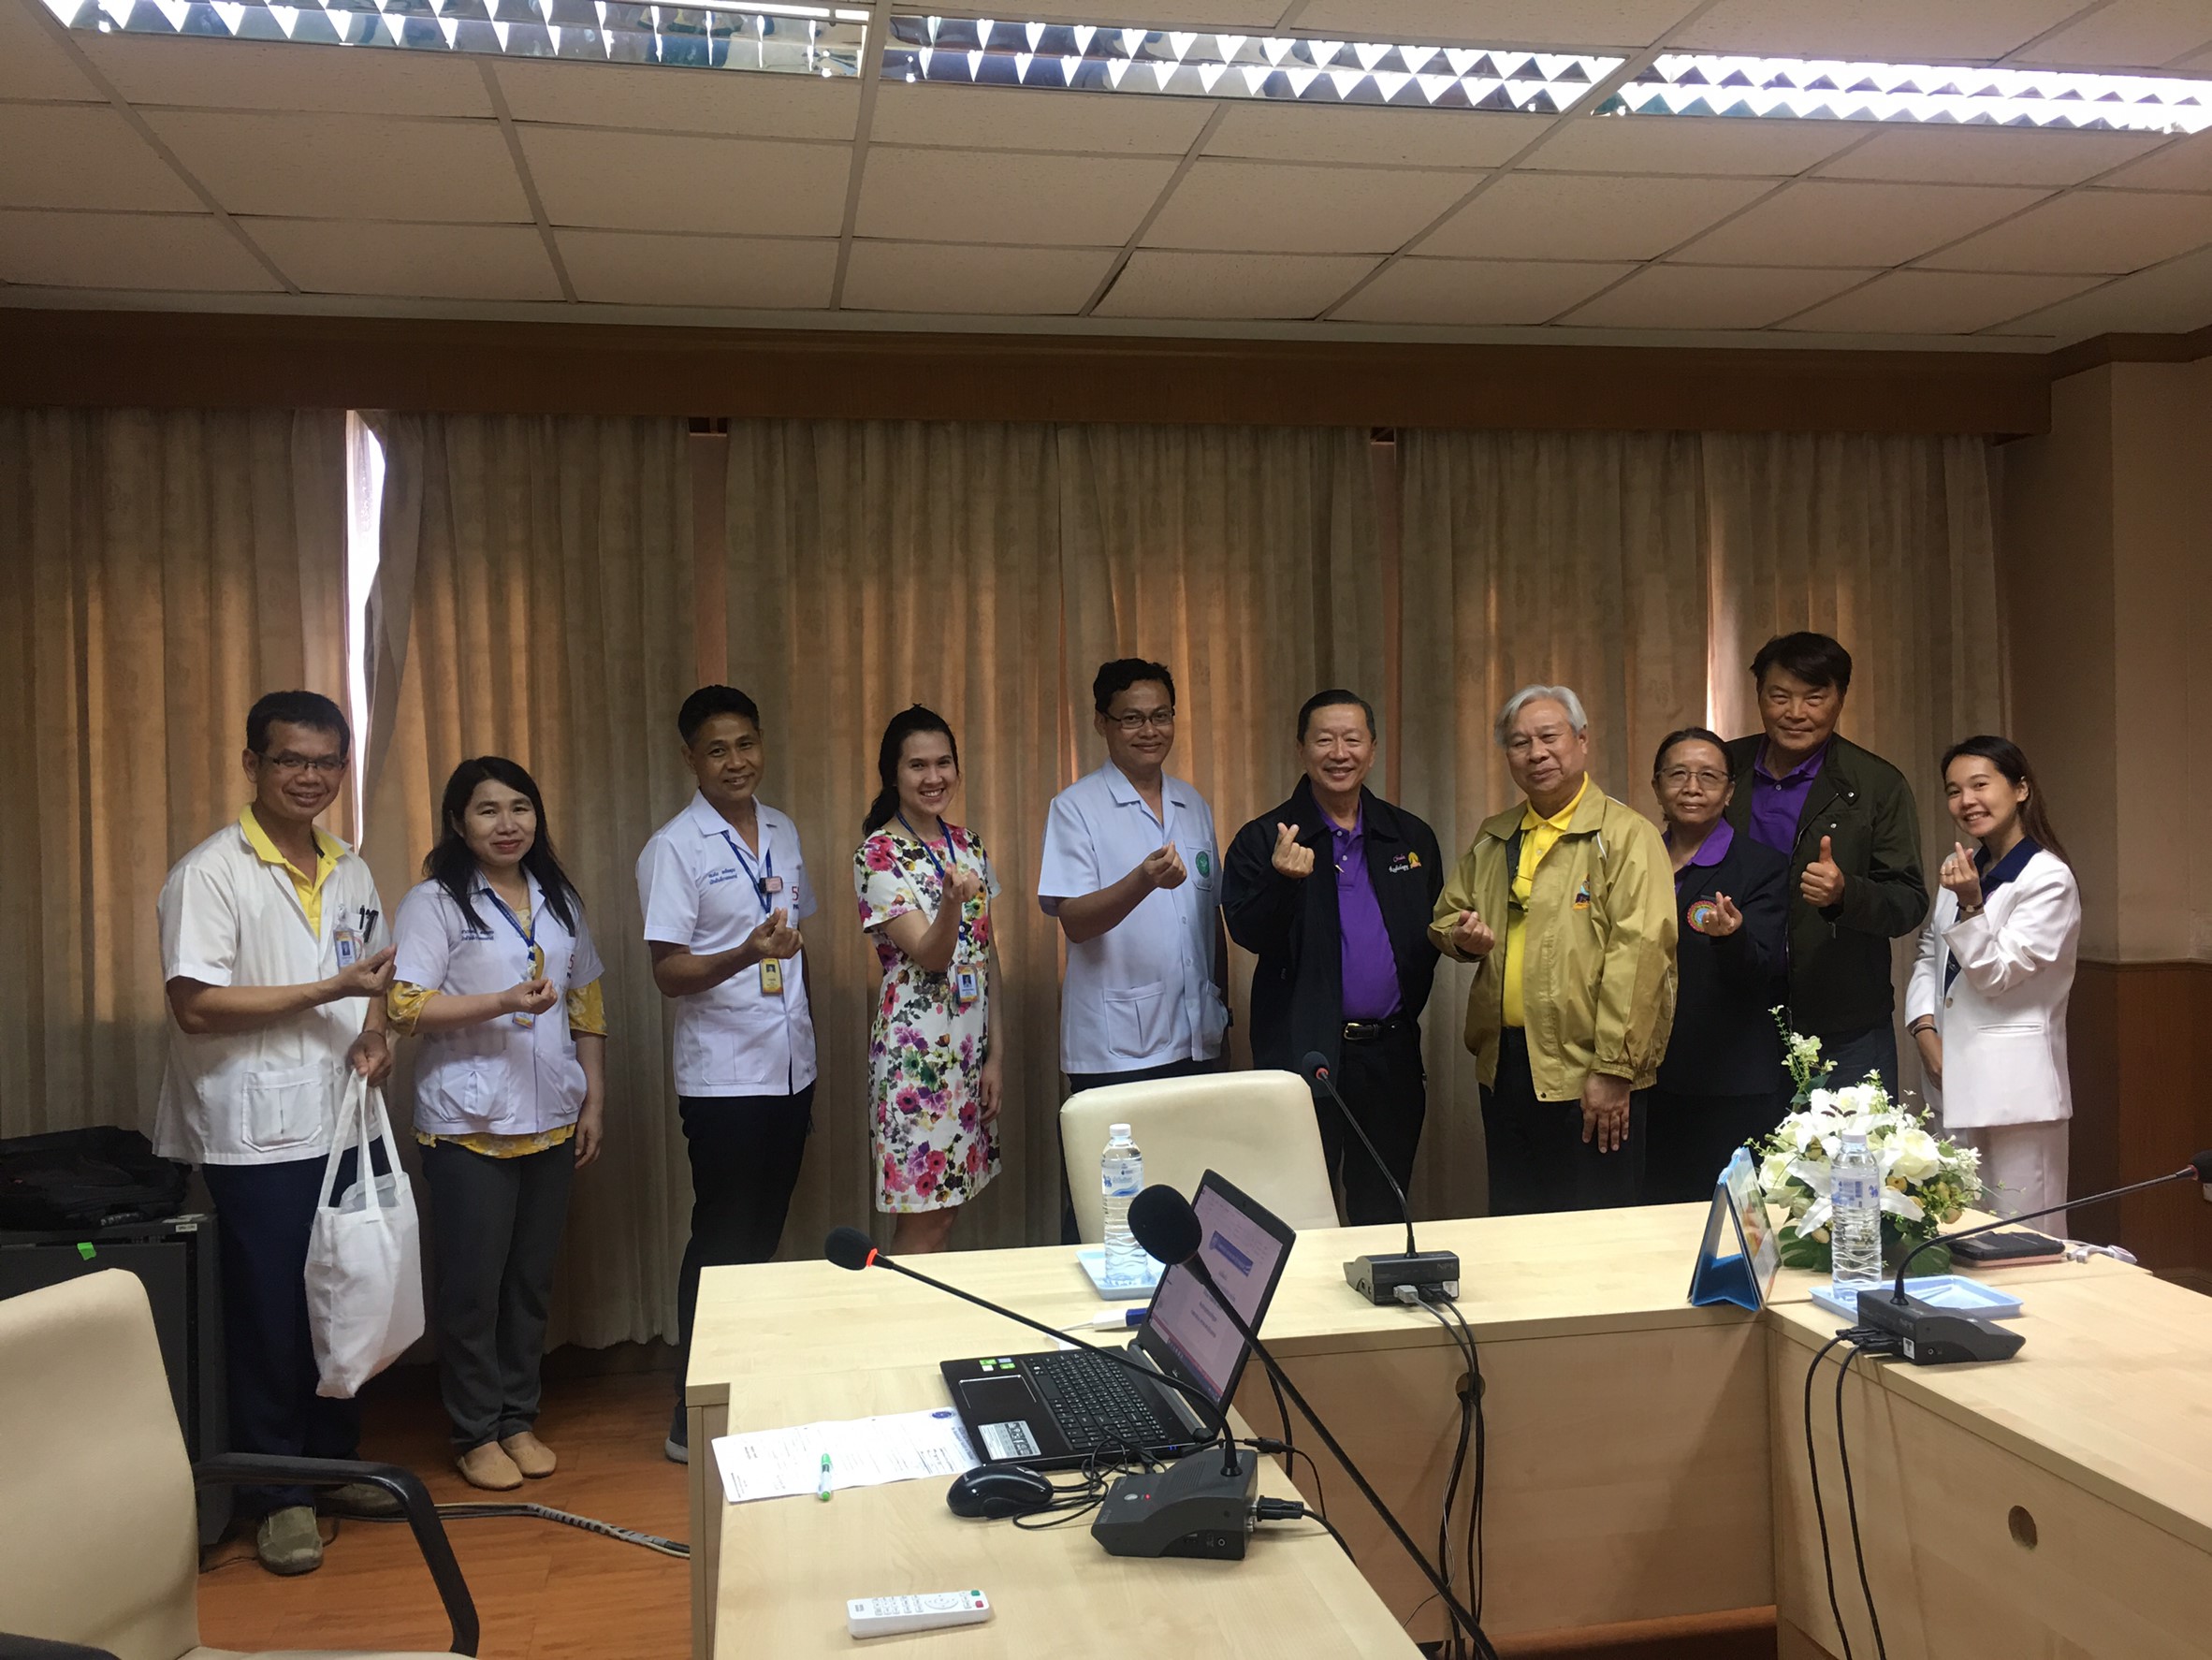 ประชุมวิชาการร่วมกับรังสีการแพทย์แห่งประเทศไทย ครั้งที่17 27-29 พ.ย. - พร้อมเข้าเยี่ยมและให้กำลังใจหน่วยงานรังสีวิทยาในพื้นที่จังหวัดอุบลราชธานีระหว่างวันที่ 25-26 พฤศจิกายน 2562 33